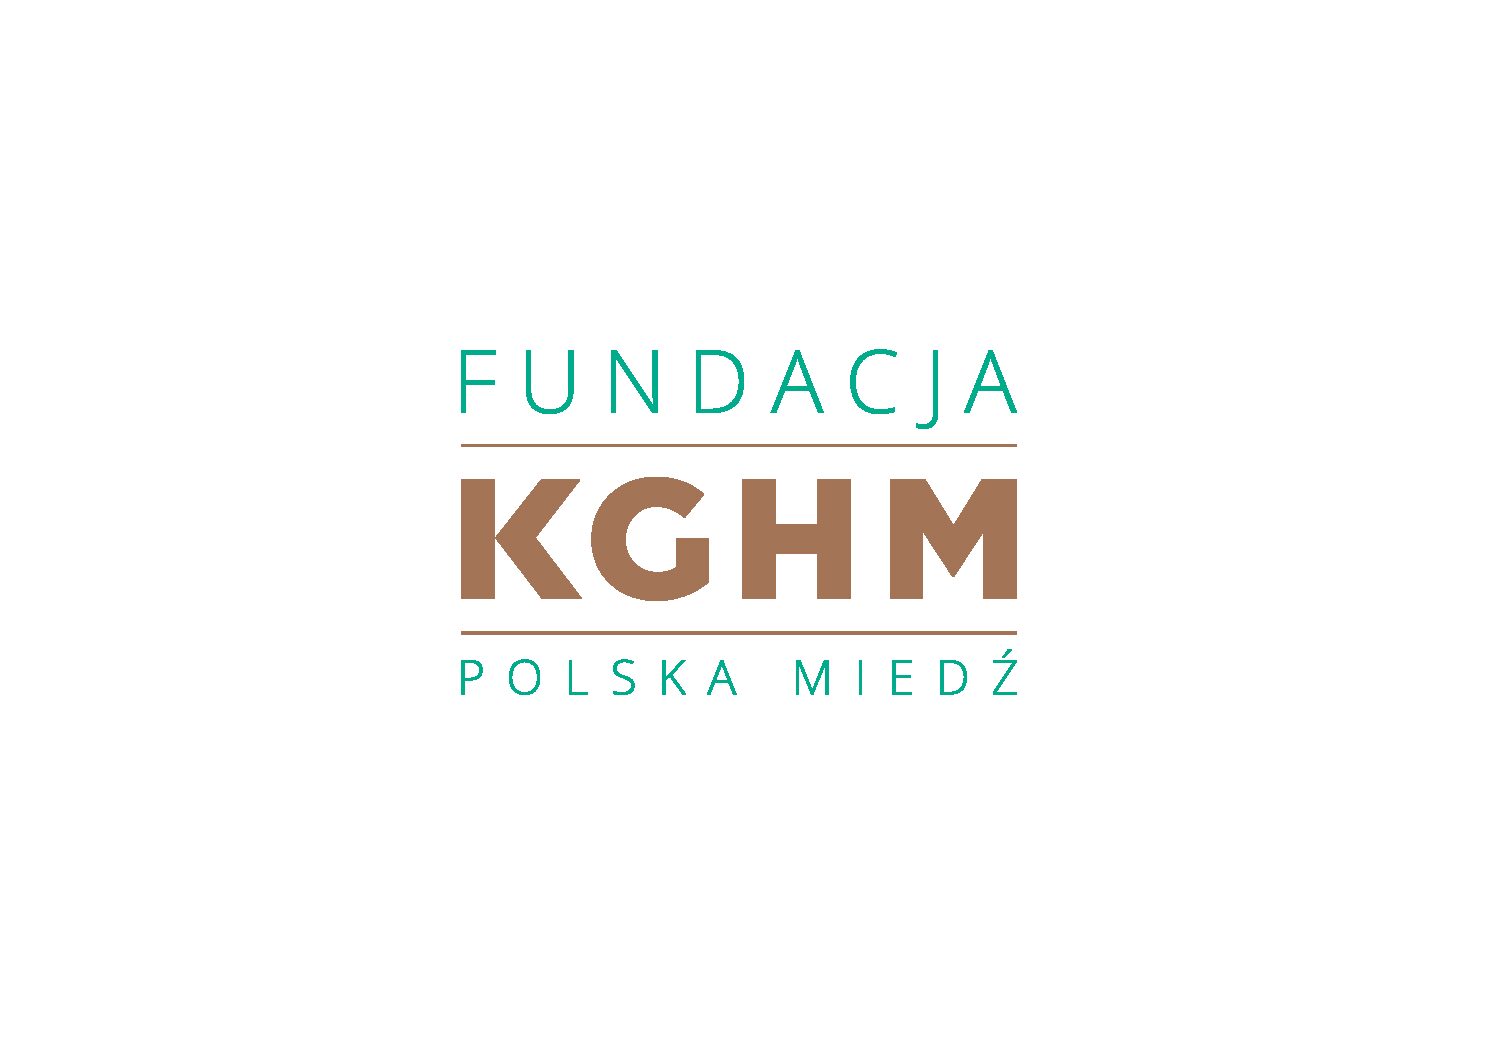 Szpital kupił nowe urządzenia medyczne za środki finansowe przekazane przez Fundację KGHM Polska Miedź